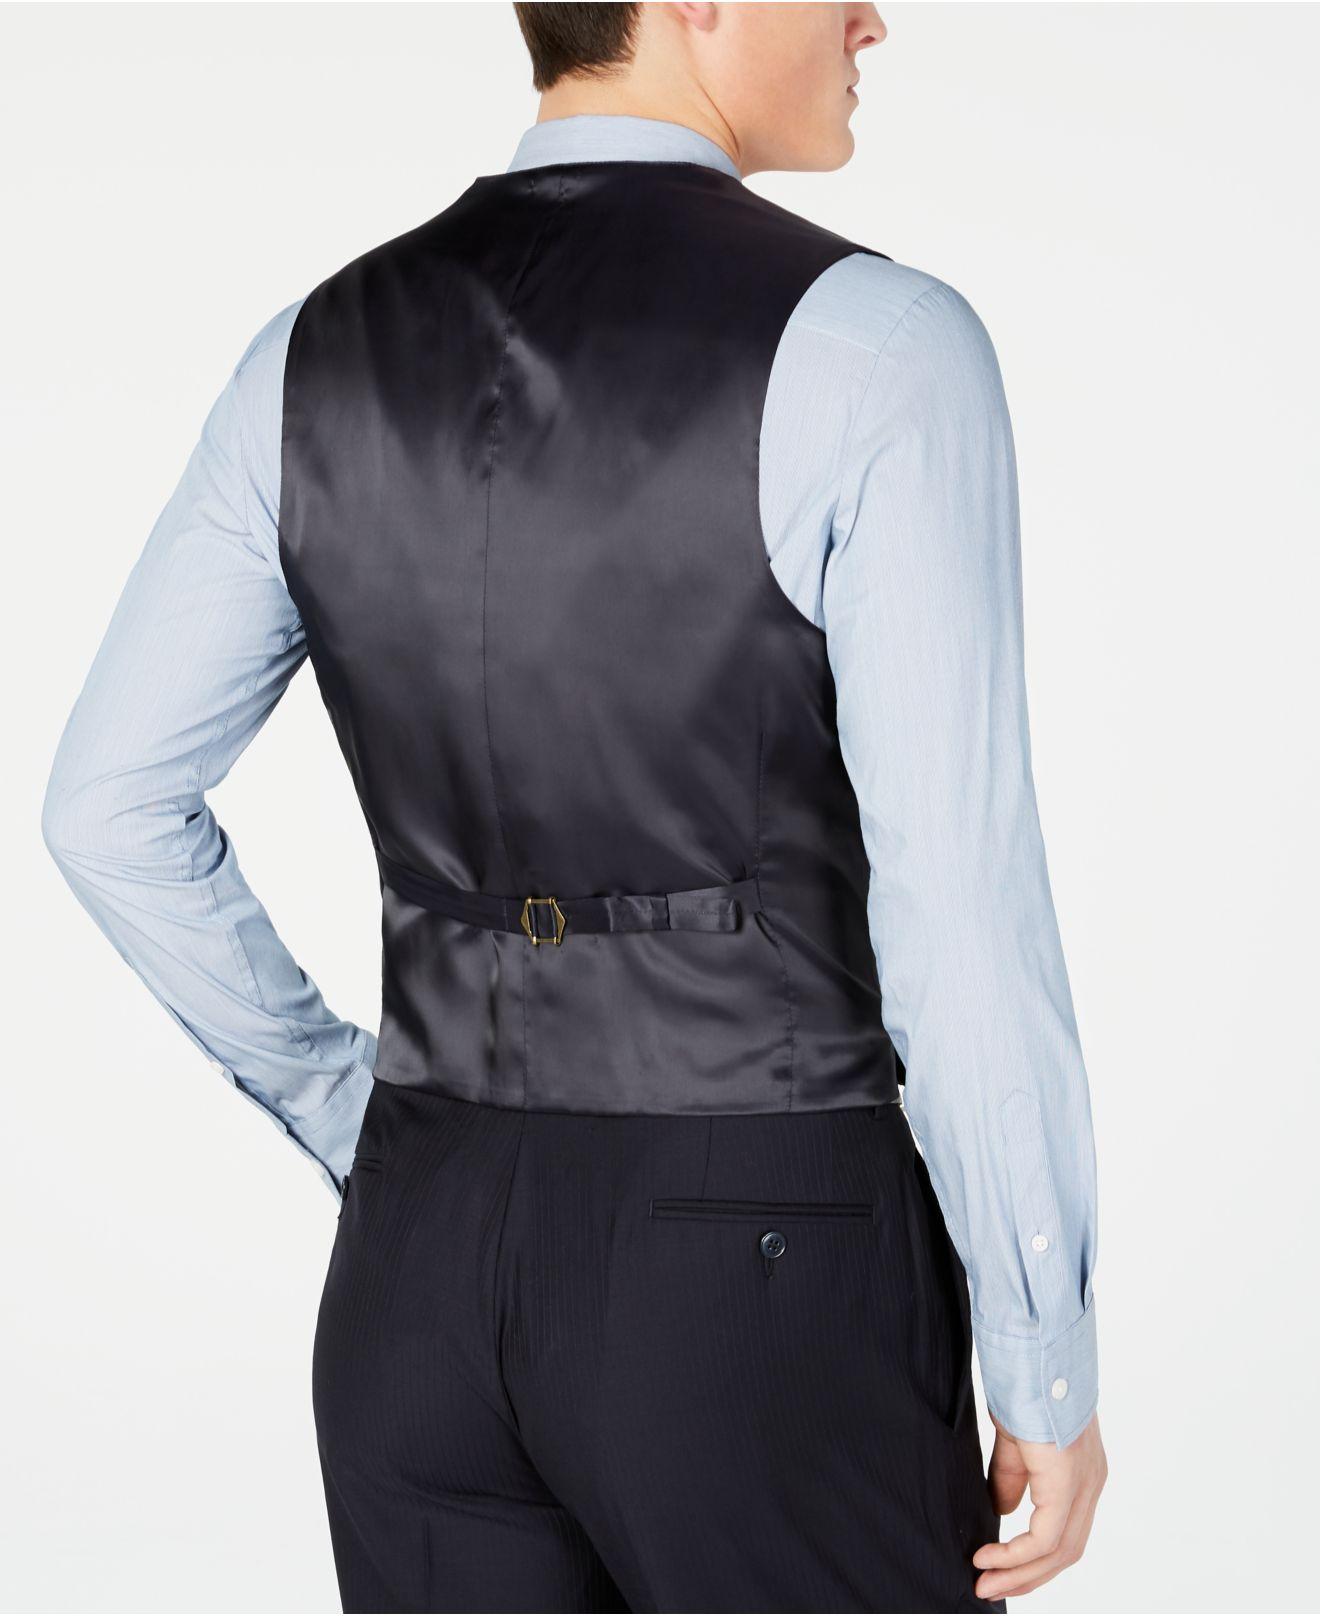 Calvin Klein Vest Suit Flash Sales, SAVE 57%.